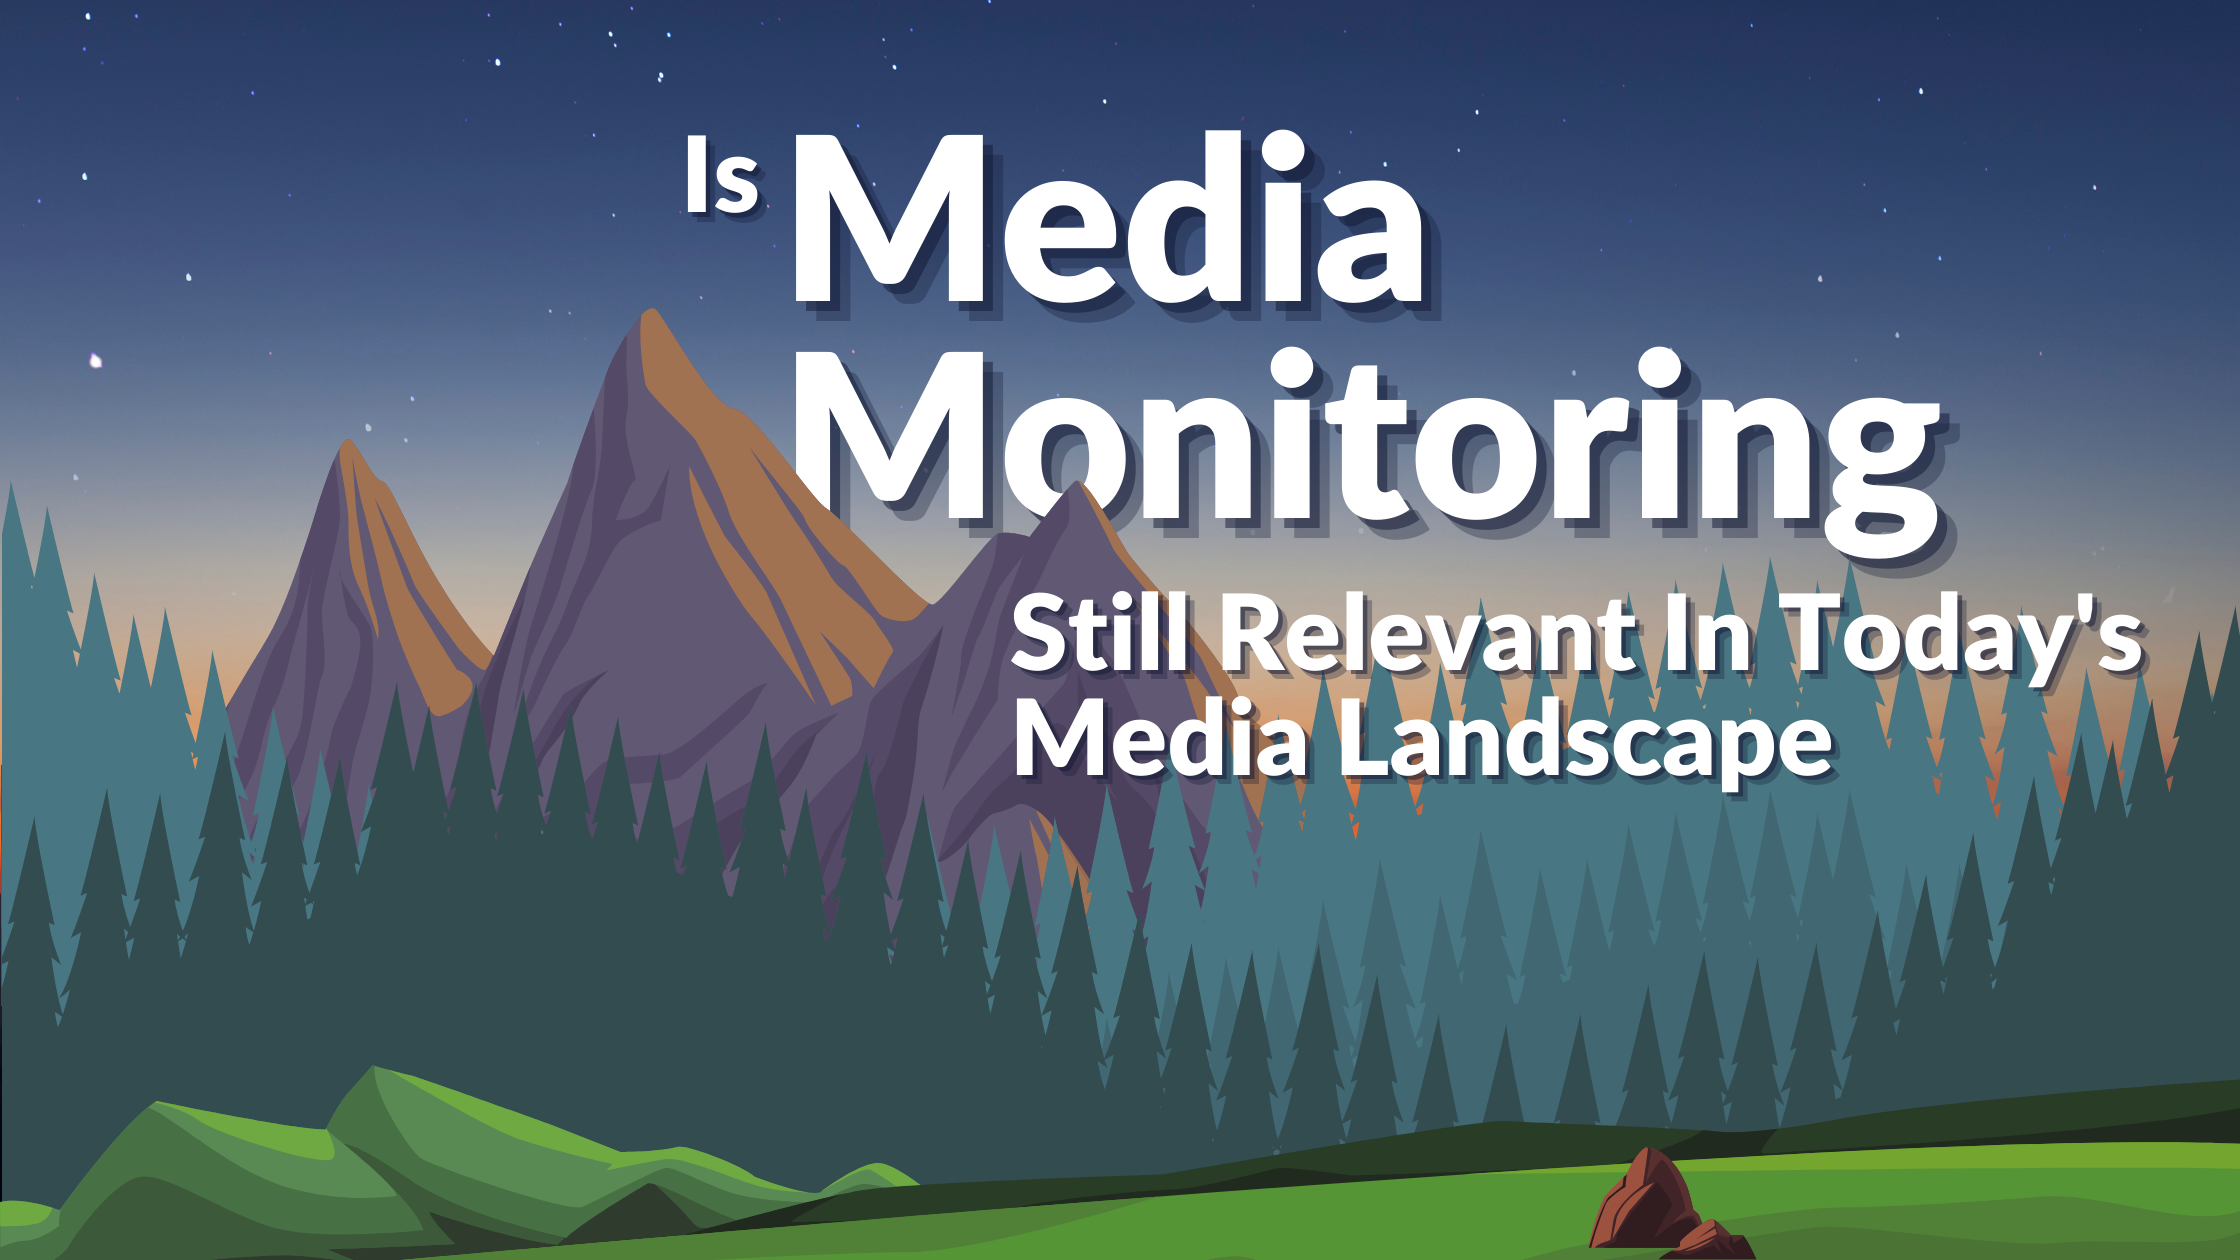 Media Monitoring